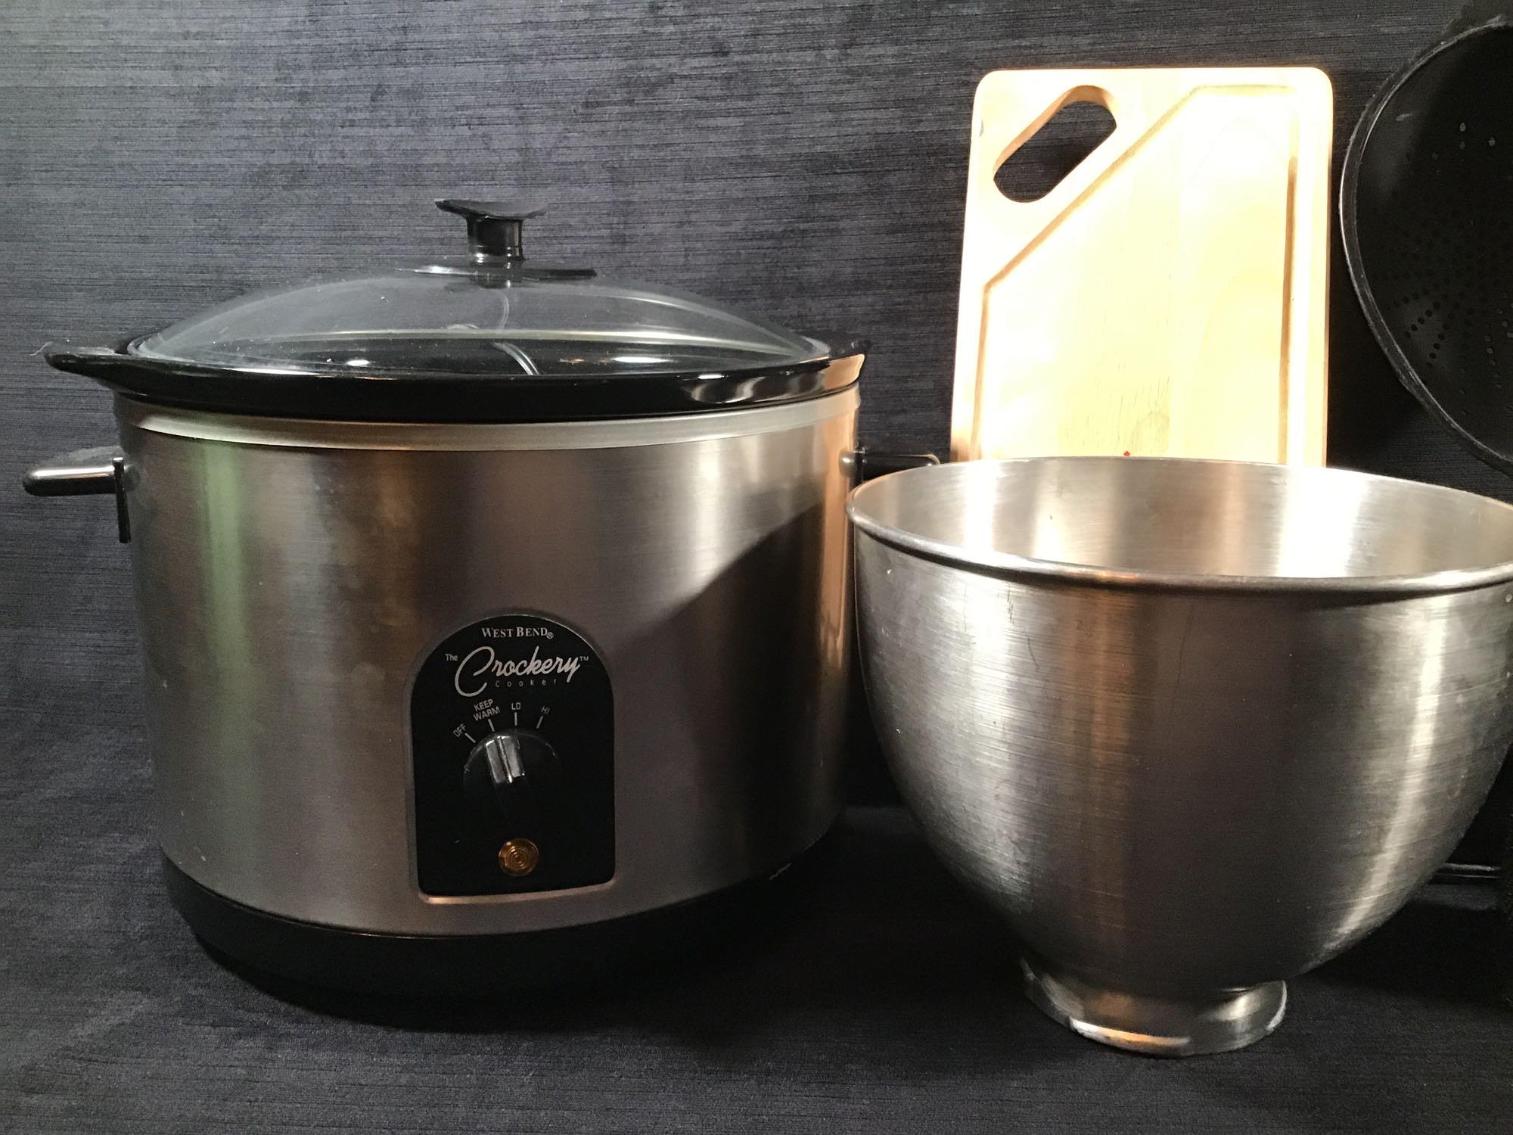 Image for Crock pot, Blender, and Kitchen Items